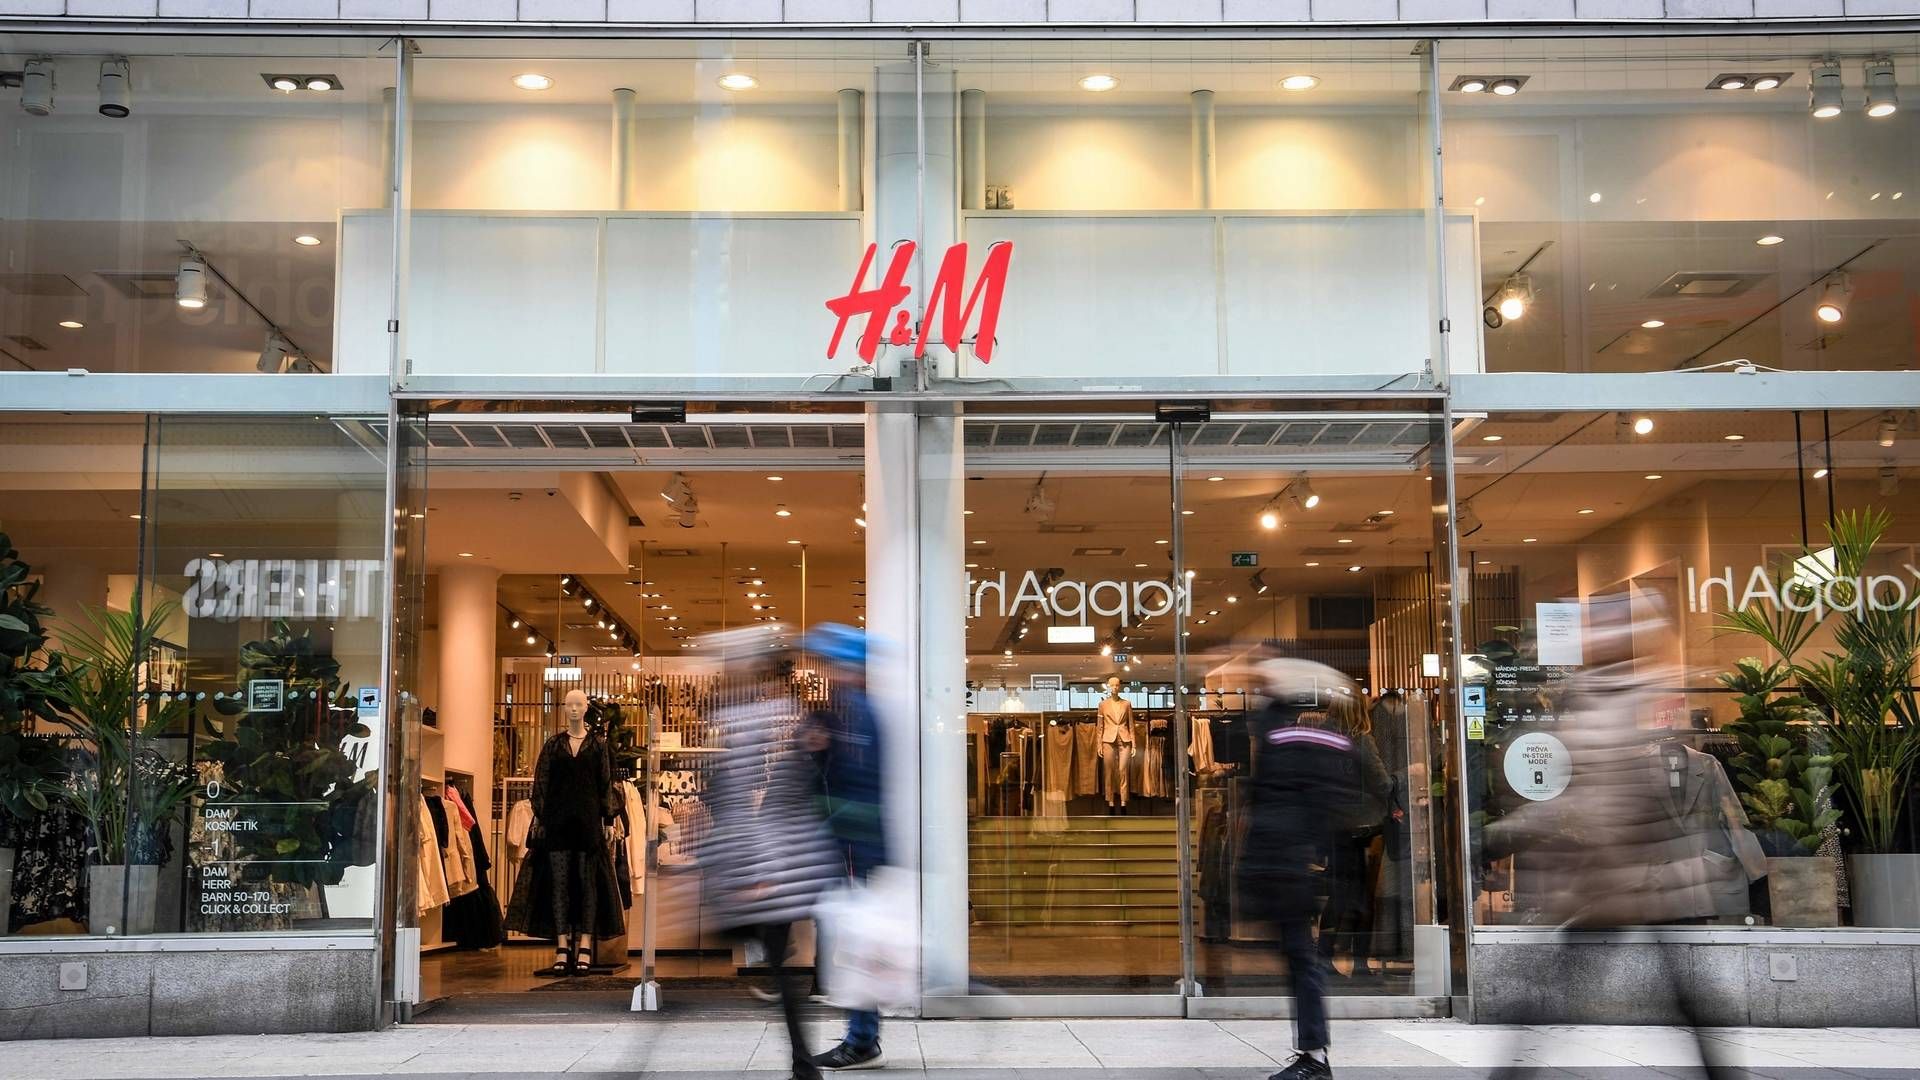 H&M i Danmark var ligesom andre store dele af detaillivet ramt hårdt under tvangslukningerne af butikslivet i 2020. Her faldt H&M's omsætning og resultat på bundlinjen betragteligt. H&M Danmark har endnu ikke offentliggjort årsregnskab for 2021. | Foto: Fredrik Sandberg/AFP